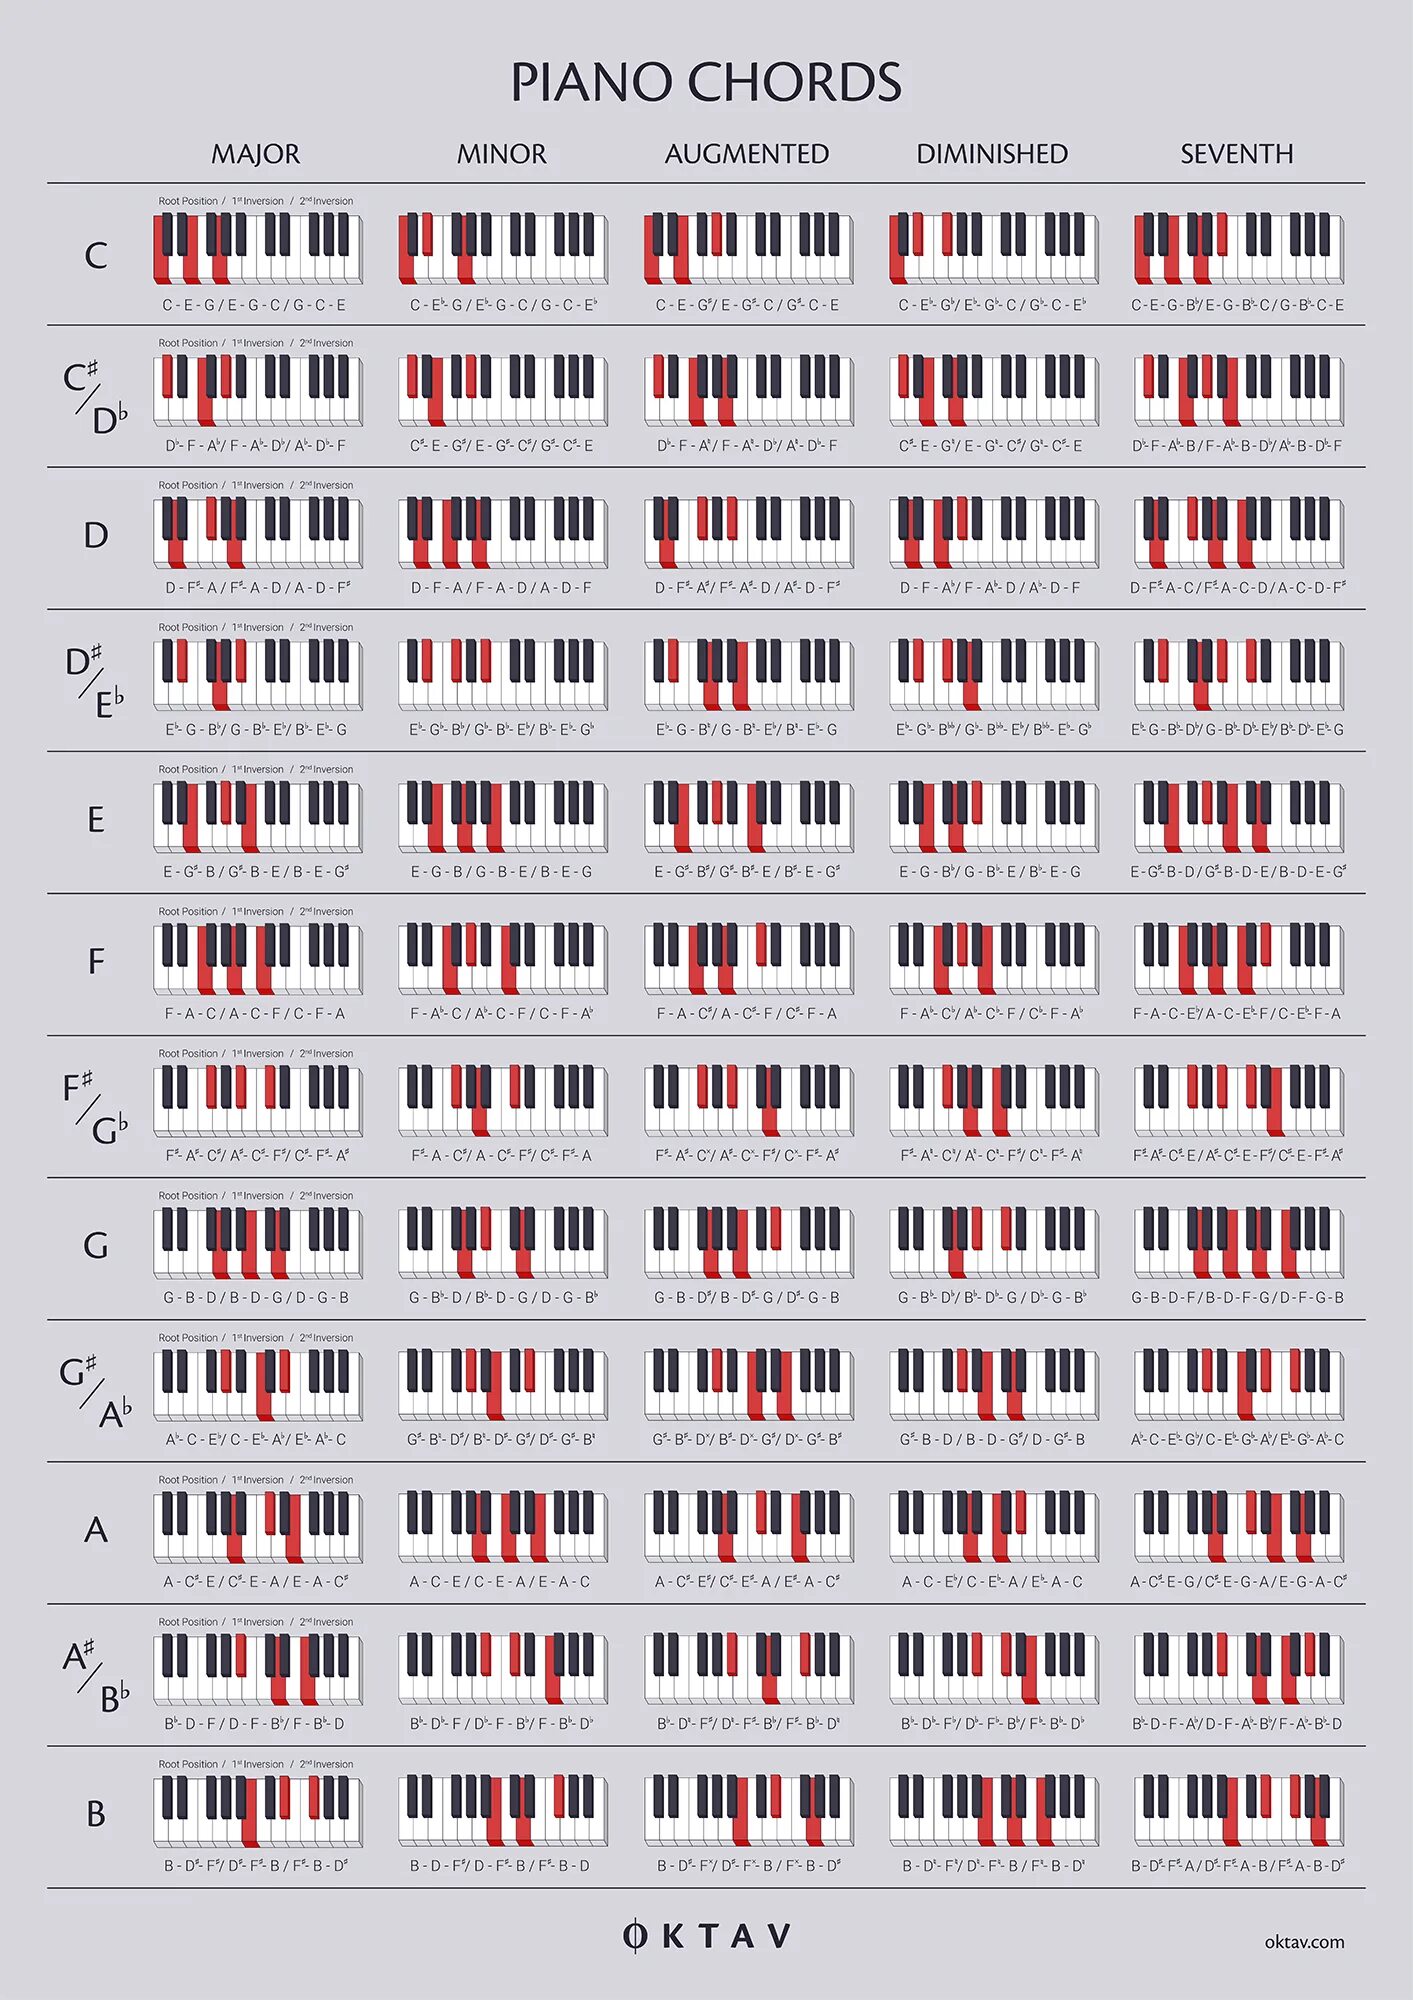 Аккорды пианино таблица. Таблица аккордов на пианино. Аккорды на фортепиано таблица. Сочетание аккордов на пианино. Таблица аккордов для синтезатора.